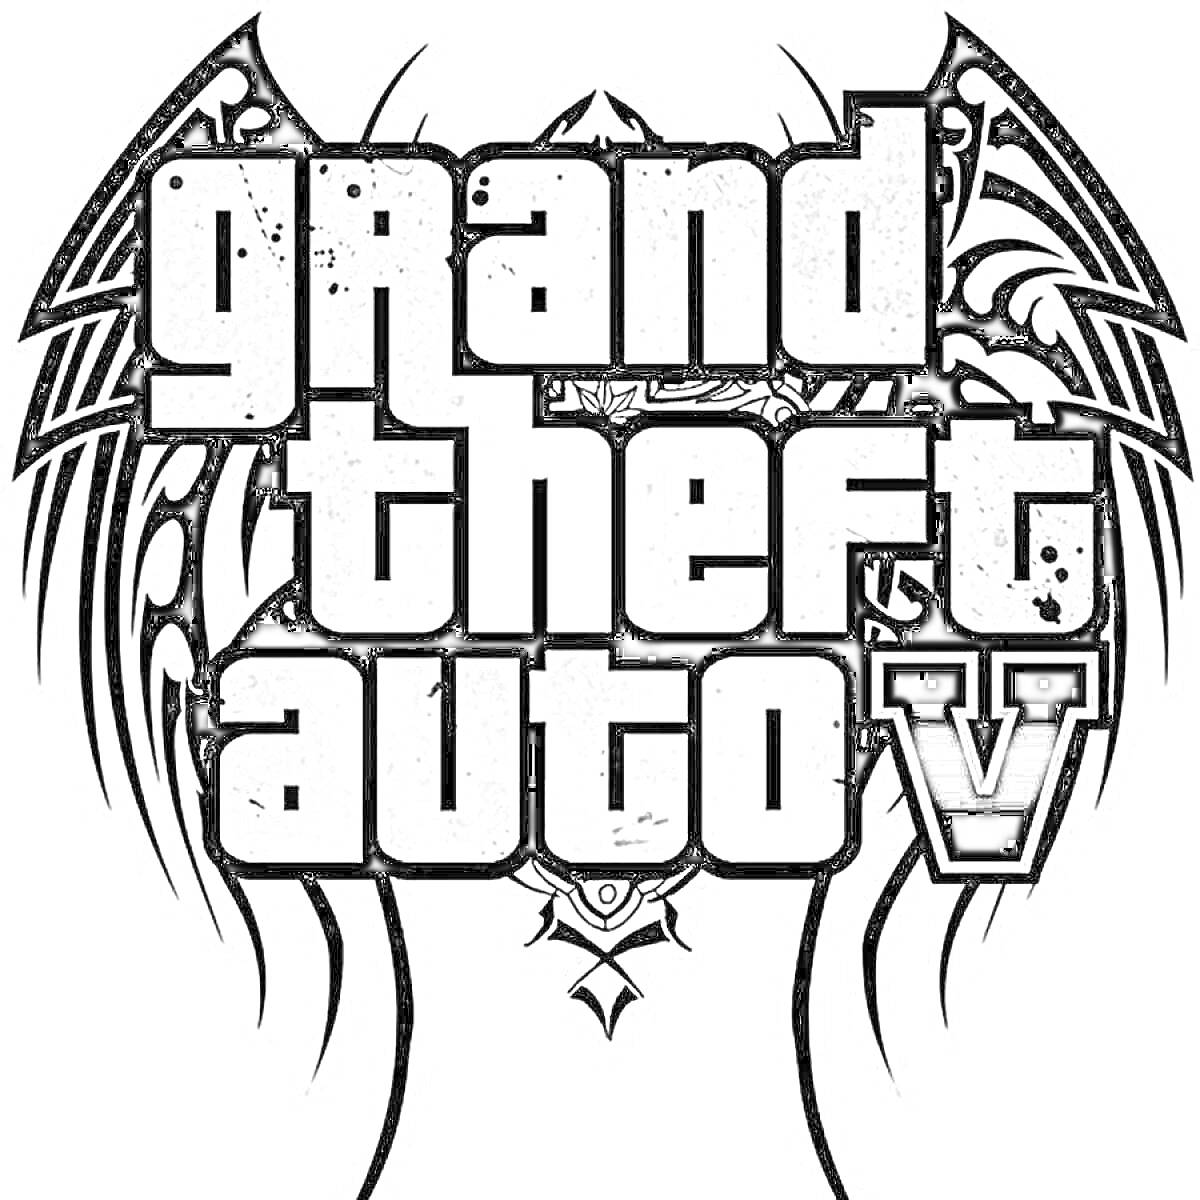 Раскраска Логотип Grand Theft Auto V с черно-белыми графическими элементами, включающими декоративные крылья и стилизованные узоры